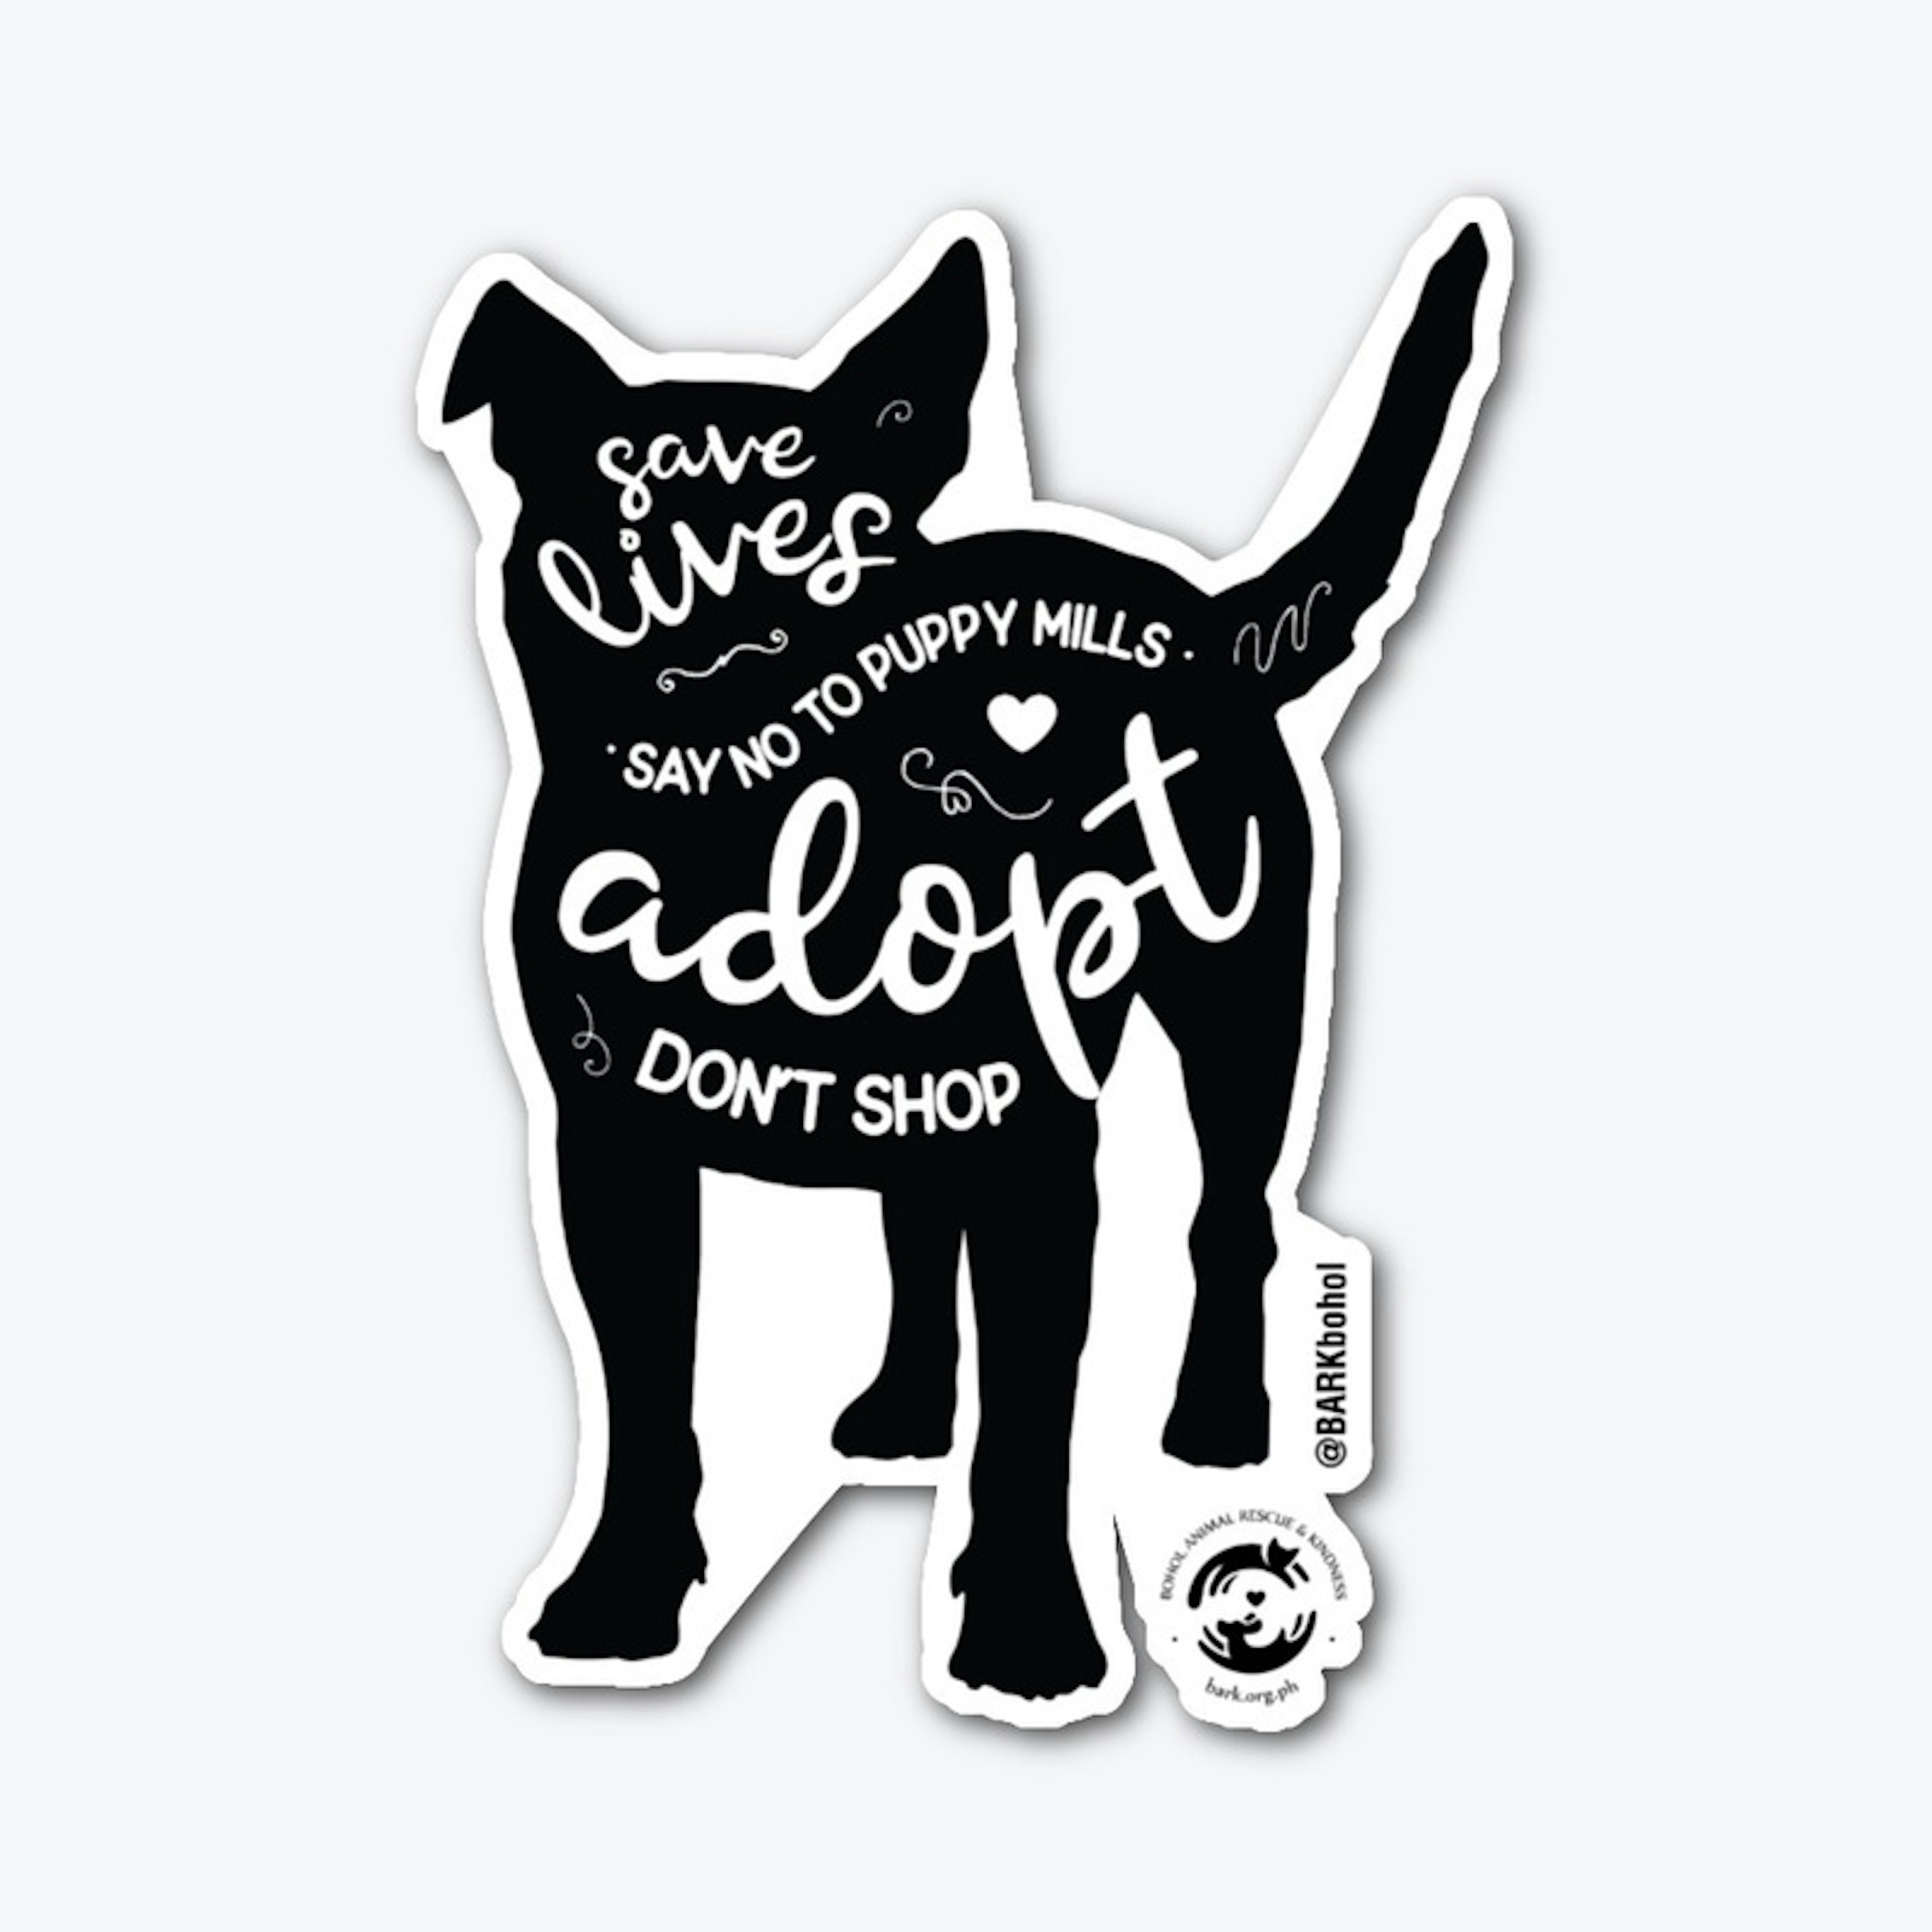 Adopt Don't Shop - Doggo